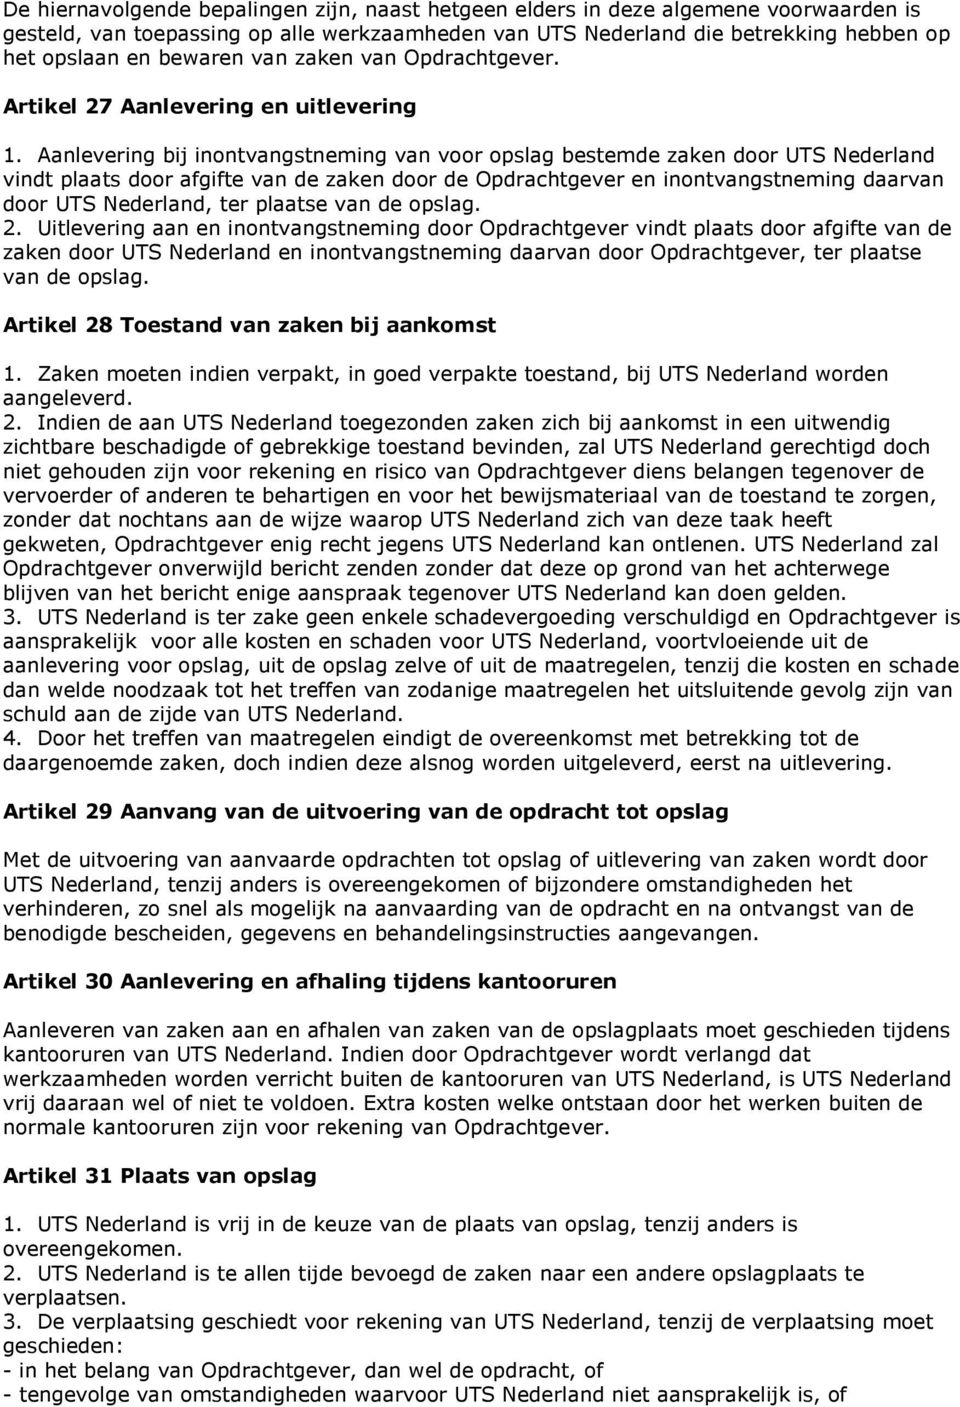 Aanlevering bij inontvangstneming van voor opslag bestemde zaken door UTS Nederland vindt plaats door afgifte van de zaken door de Opdrachtgever en inontvangstneming daarvan door UTS Nederland, ter